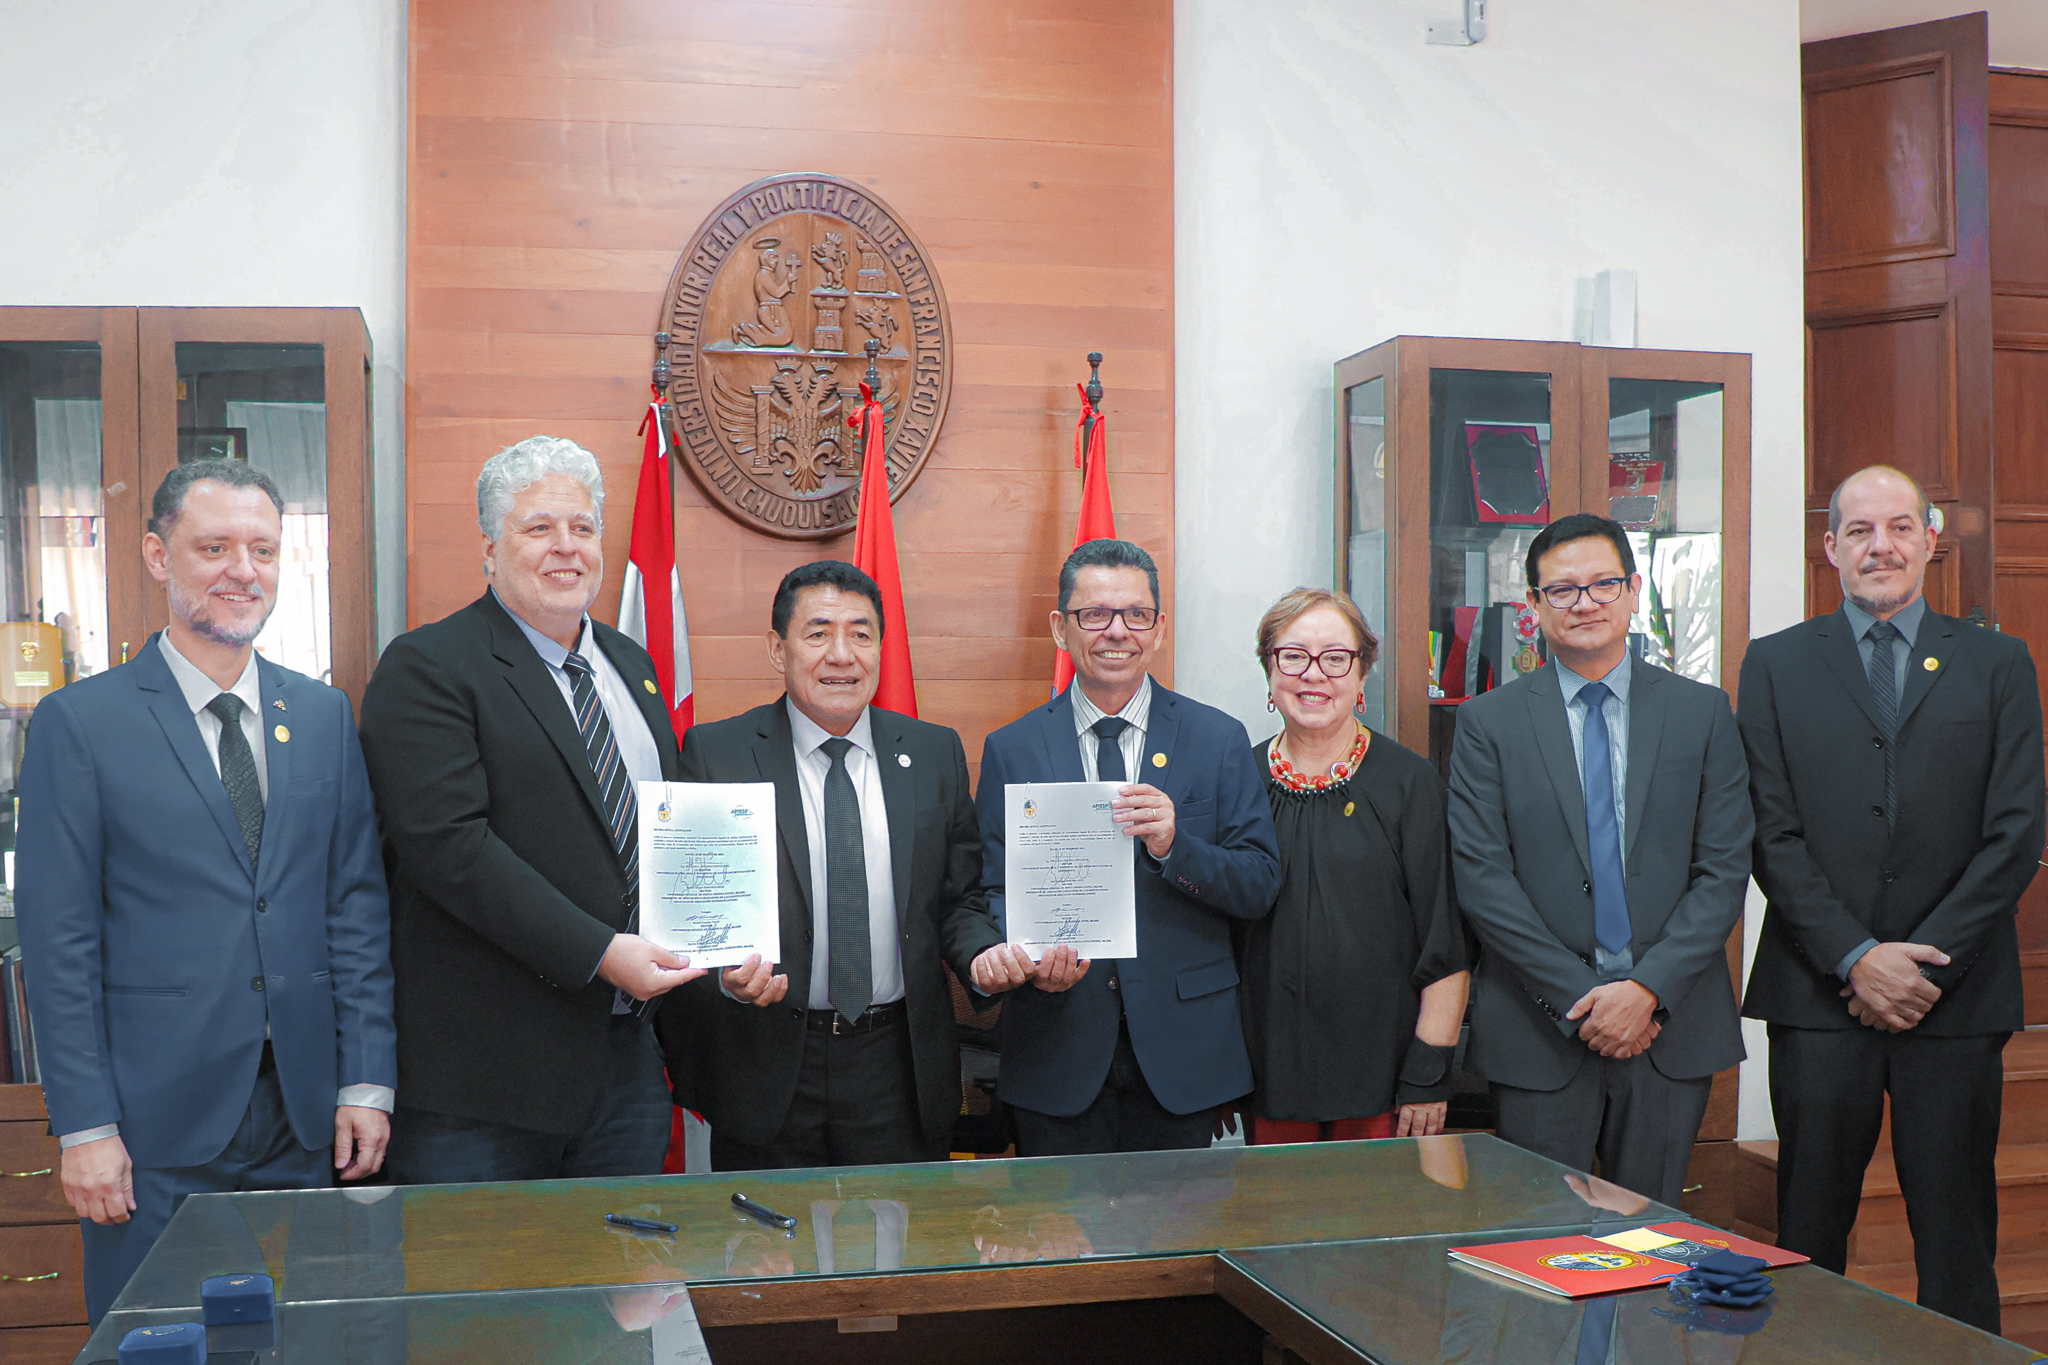 Apiesp firma acordo com universidade mais antiga da Bolívia